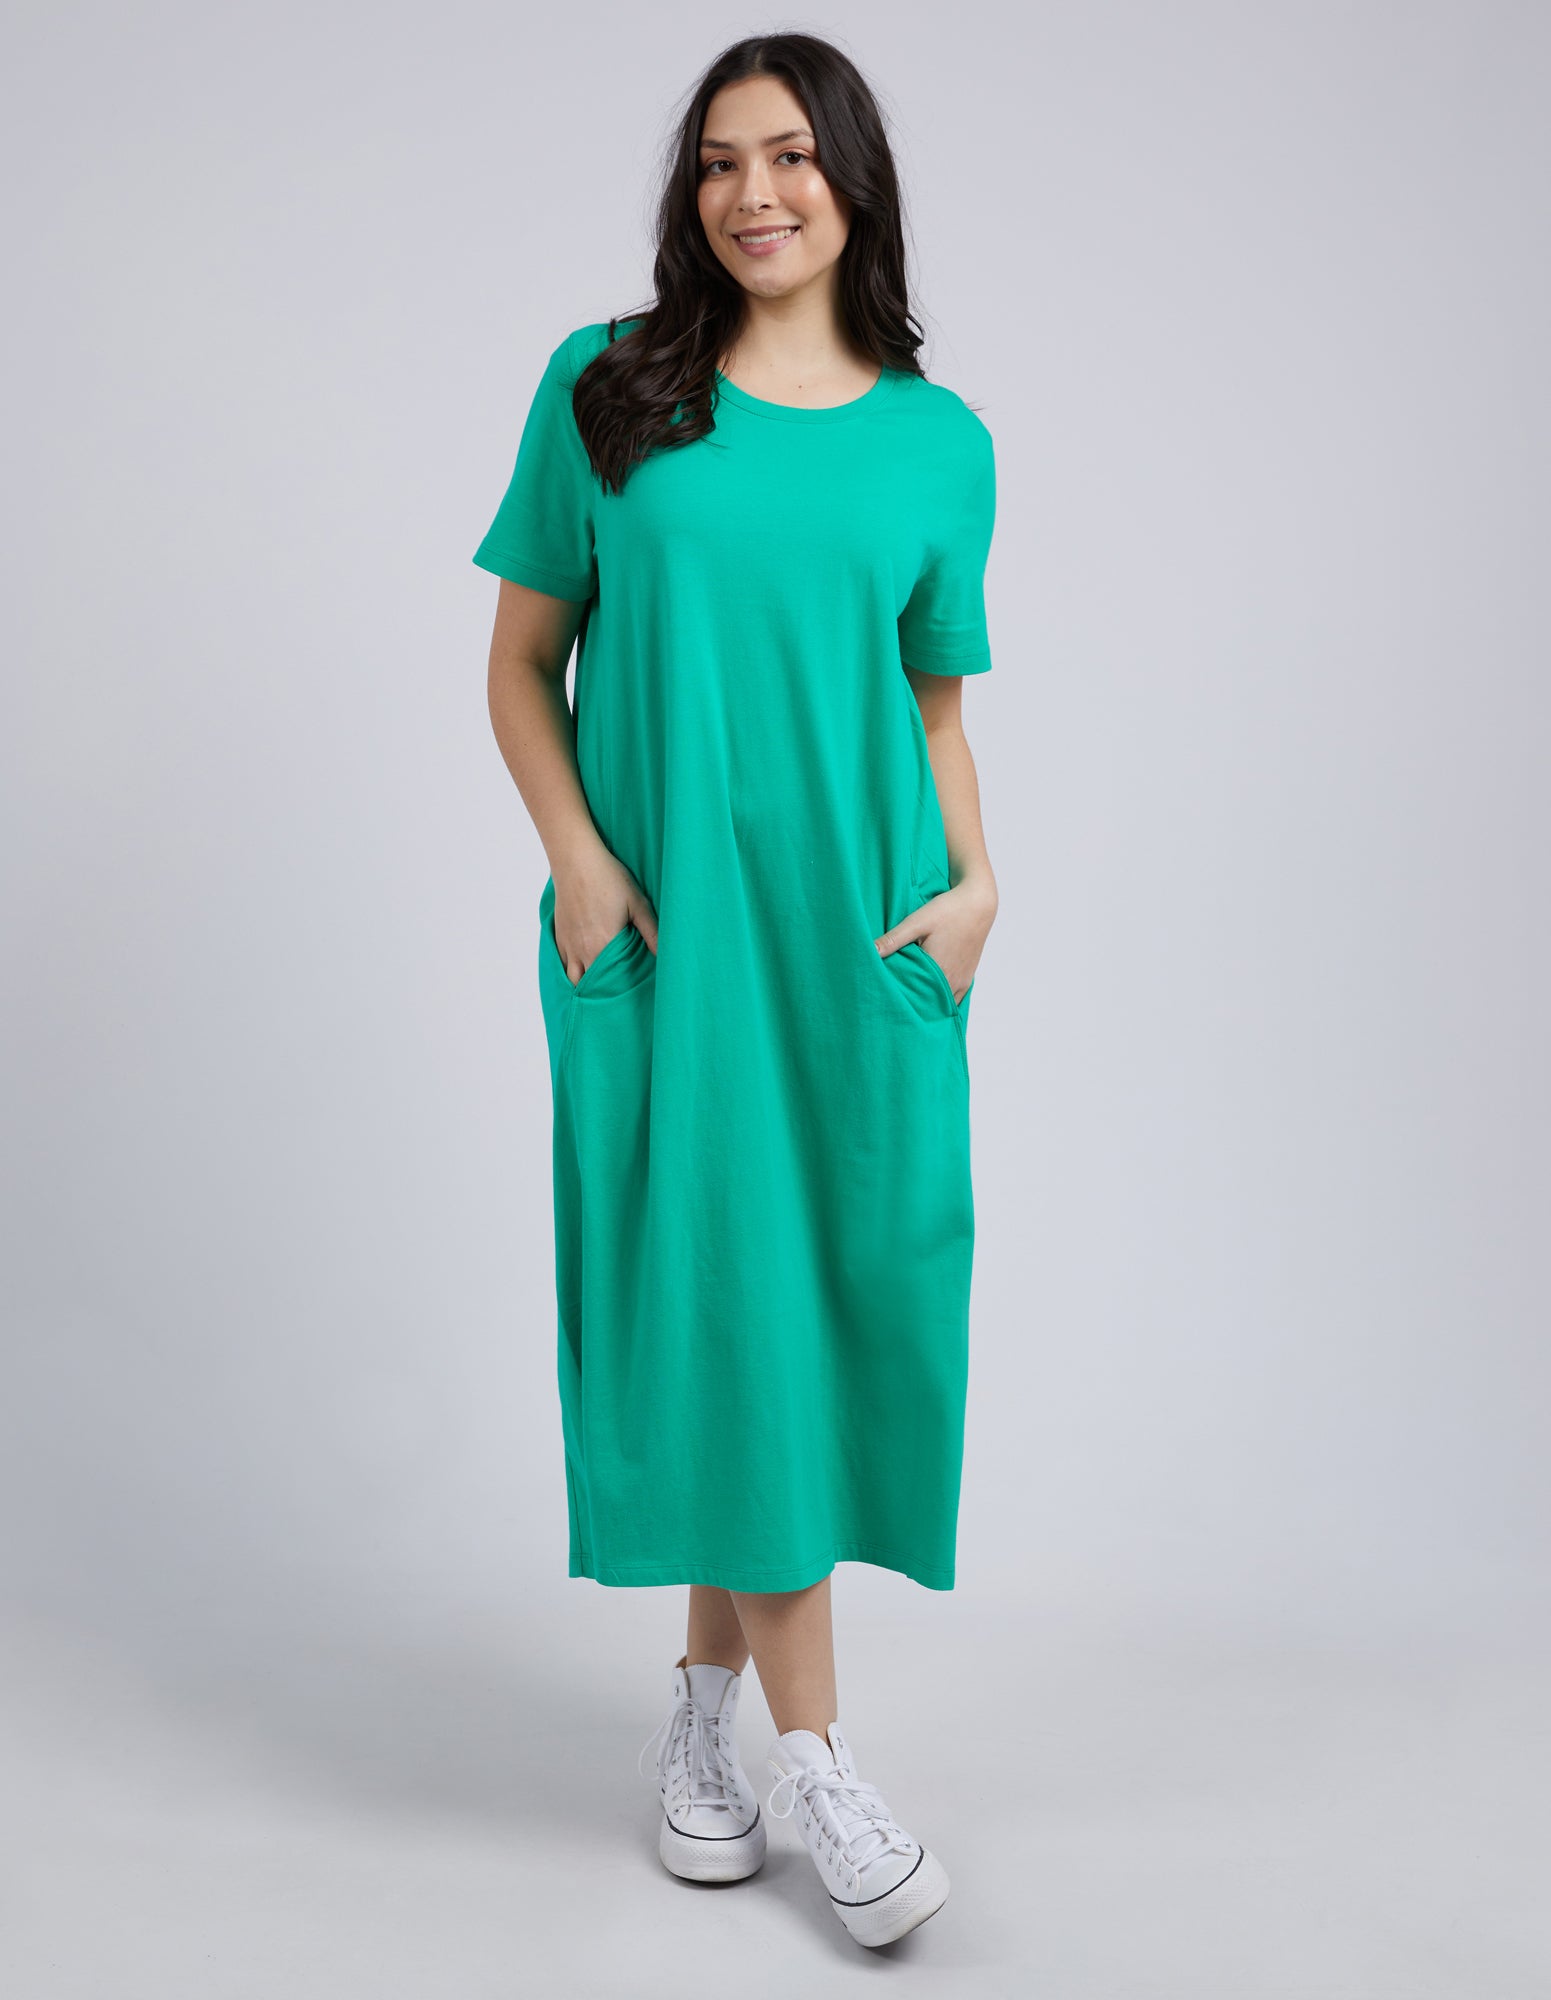 Adira Dress Bright Green